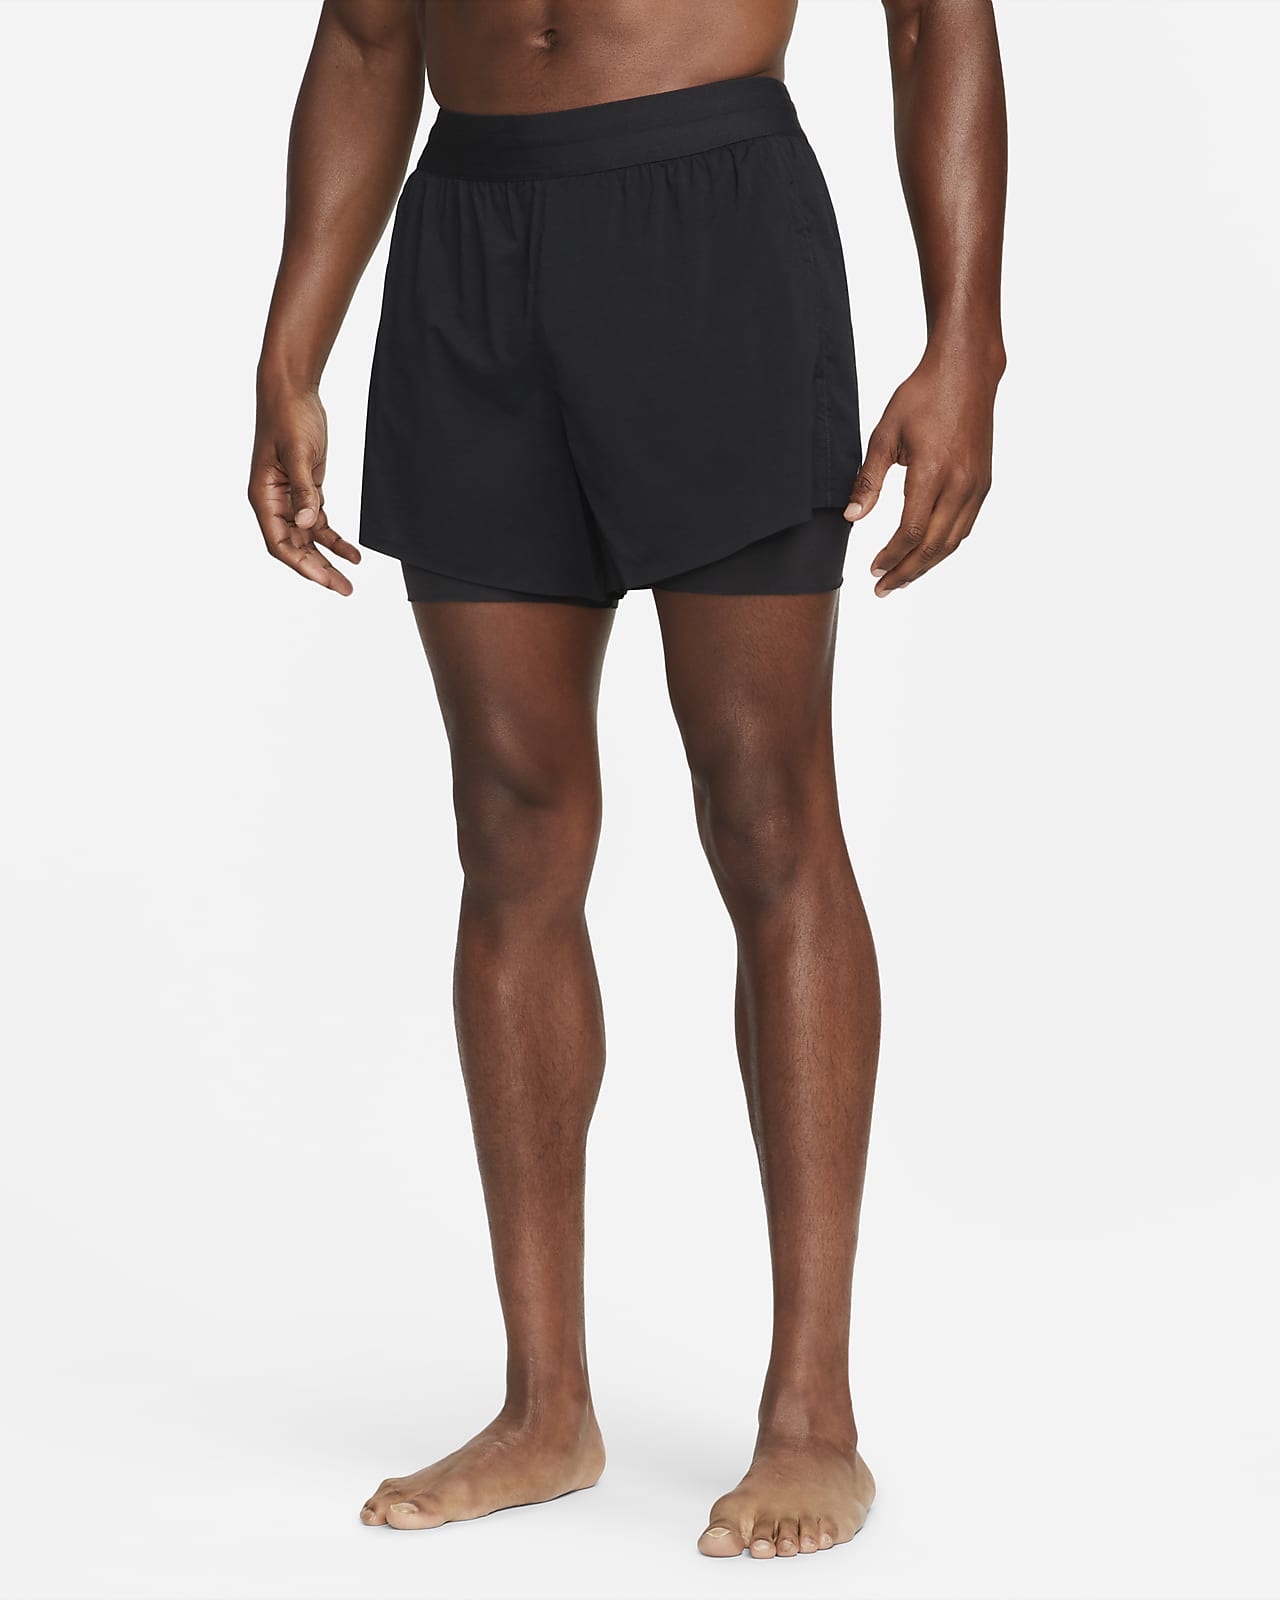 Nike Yoga Hot-Yoga-Shorts für Herren